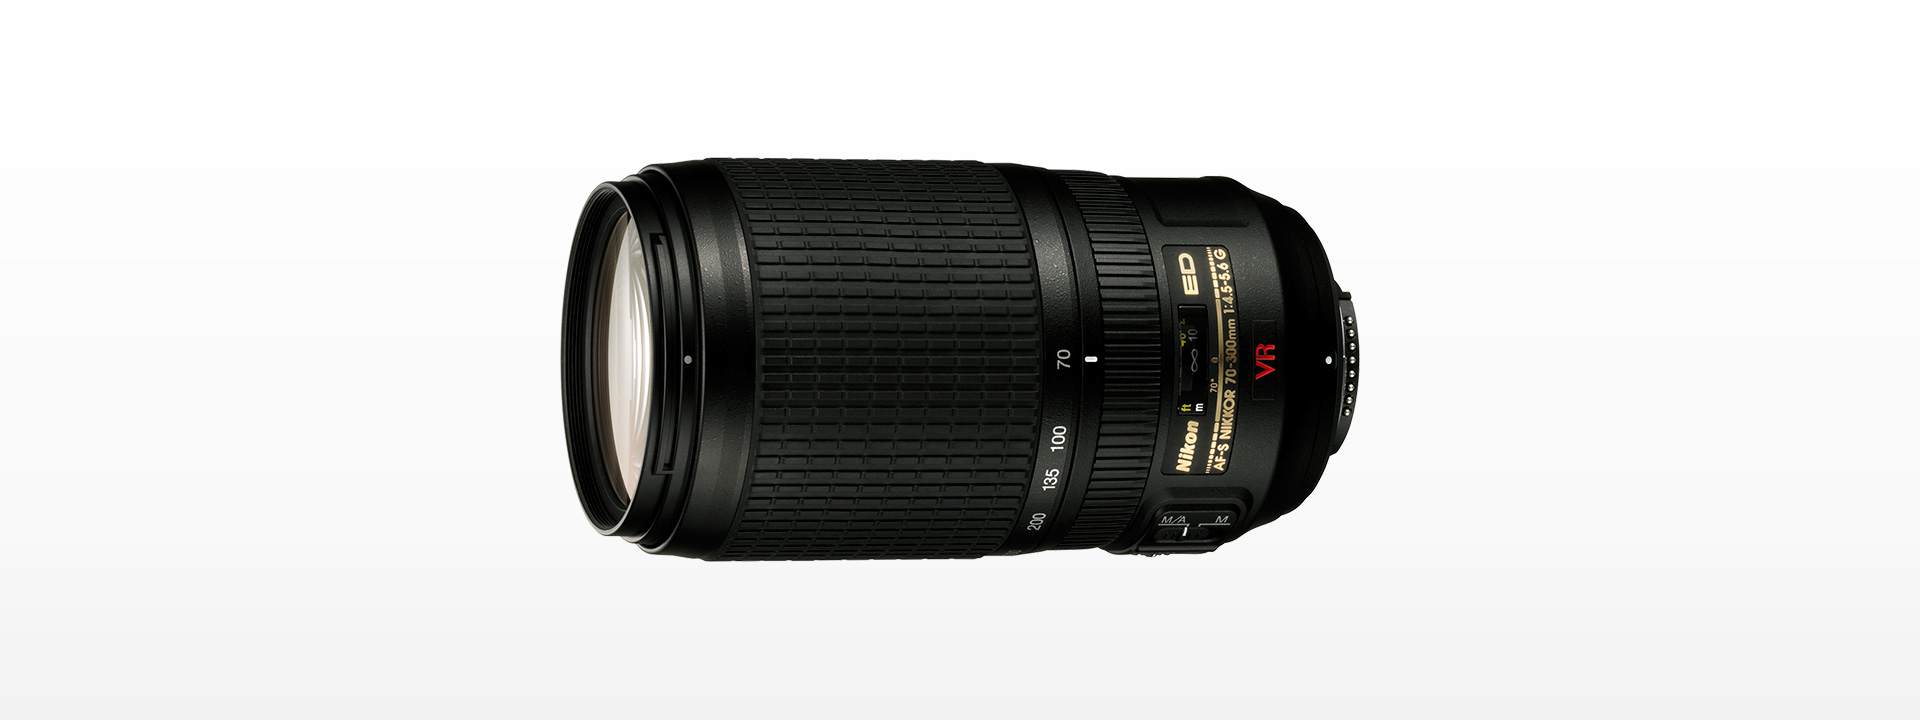 Nikon AF-S VR Nikkor 70-300mm f/4.5-5.6G レンズ(ズーム)